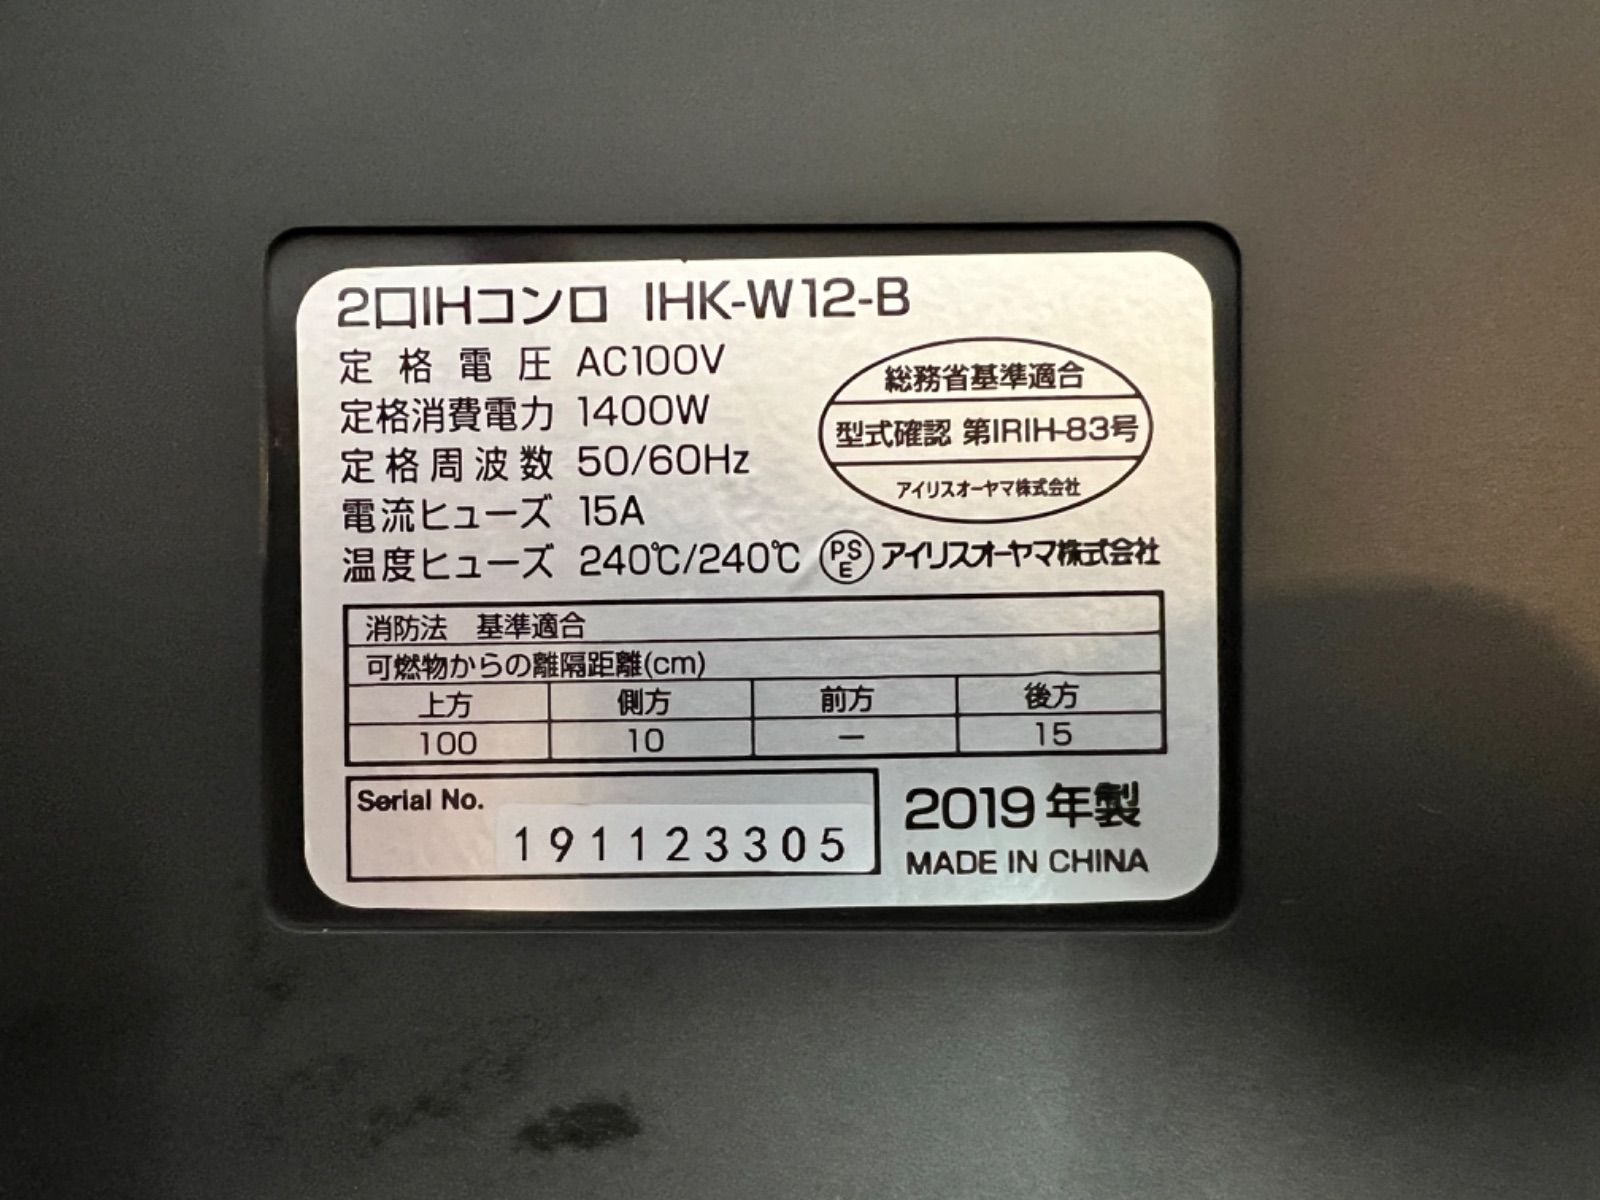 アイリスオーヤマ 2口IHコンロ 2019年製 IHK-W12-B【中古品】 - DHDA